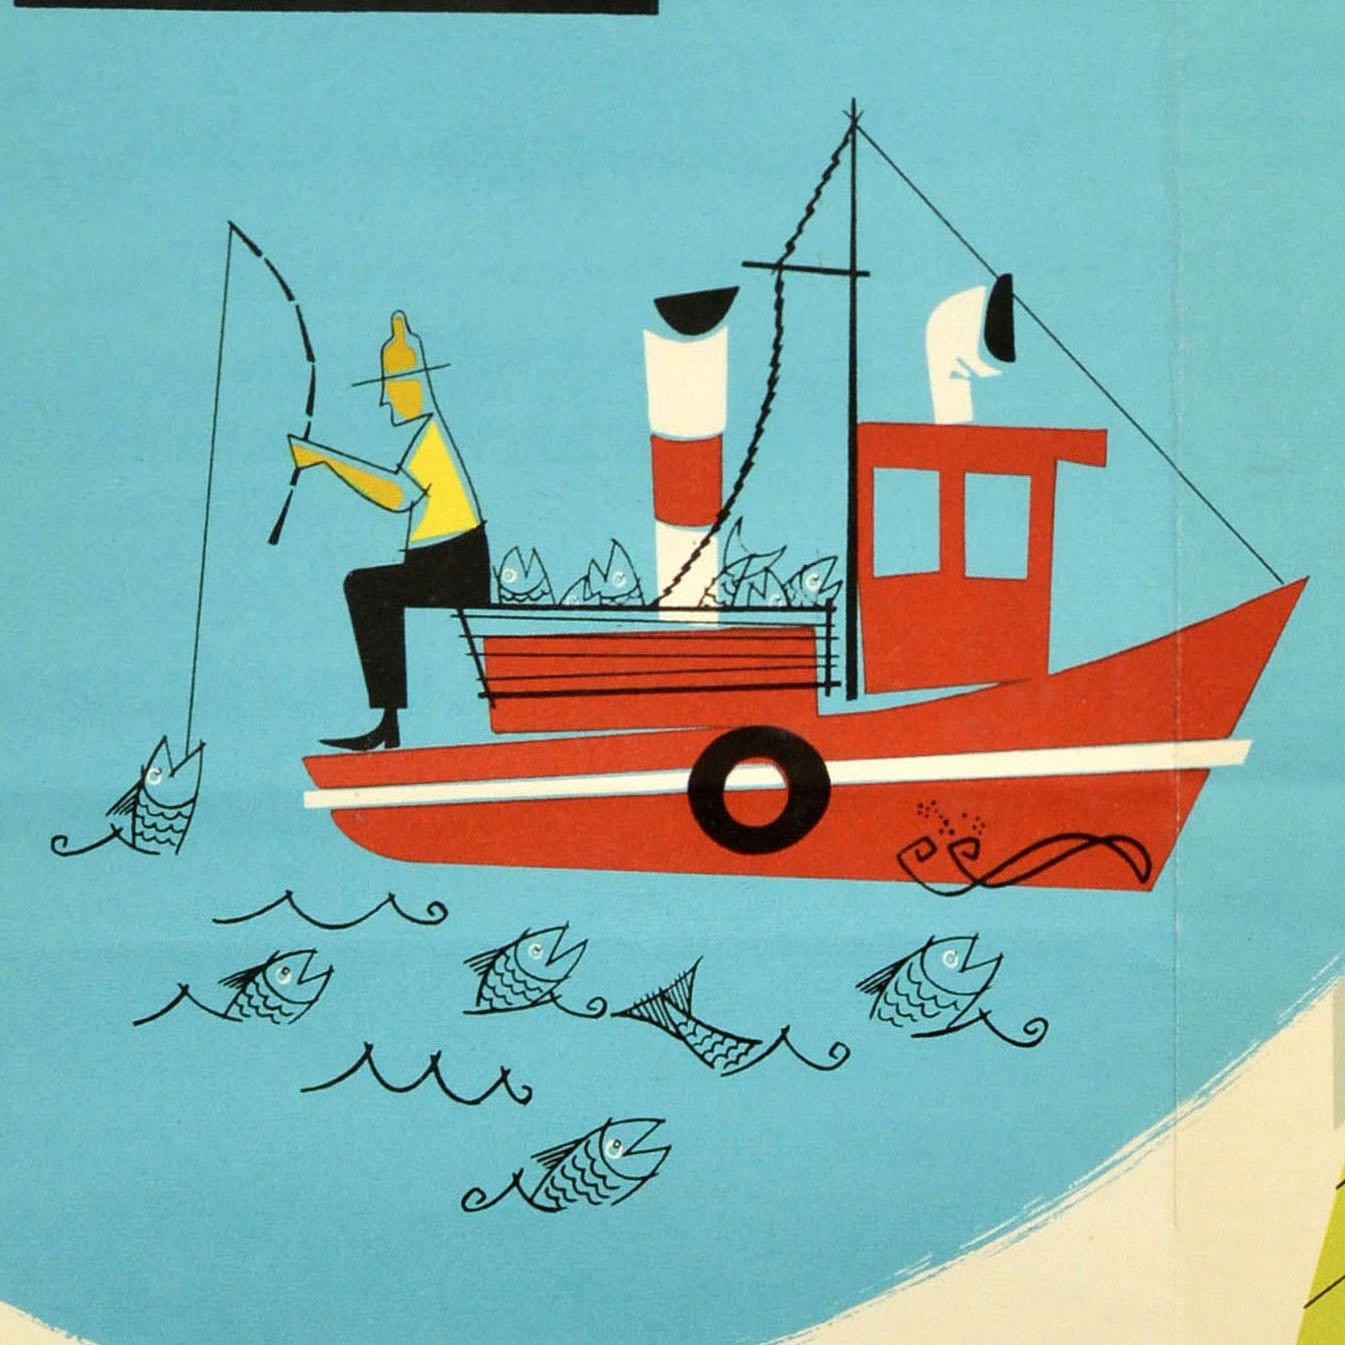 Original Vintage-Reiseplakat für Canada servizi plurissetimanali / multiple weekly services with KLM Royal Dutch Airlines mit einem farbenfrohen Design, das einen Fischer zeigt, der vom Rand eines rot-weißen Bootes unter einer Brücke fischt, mit